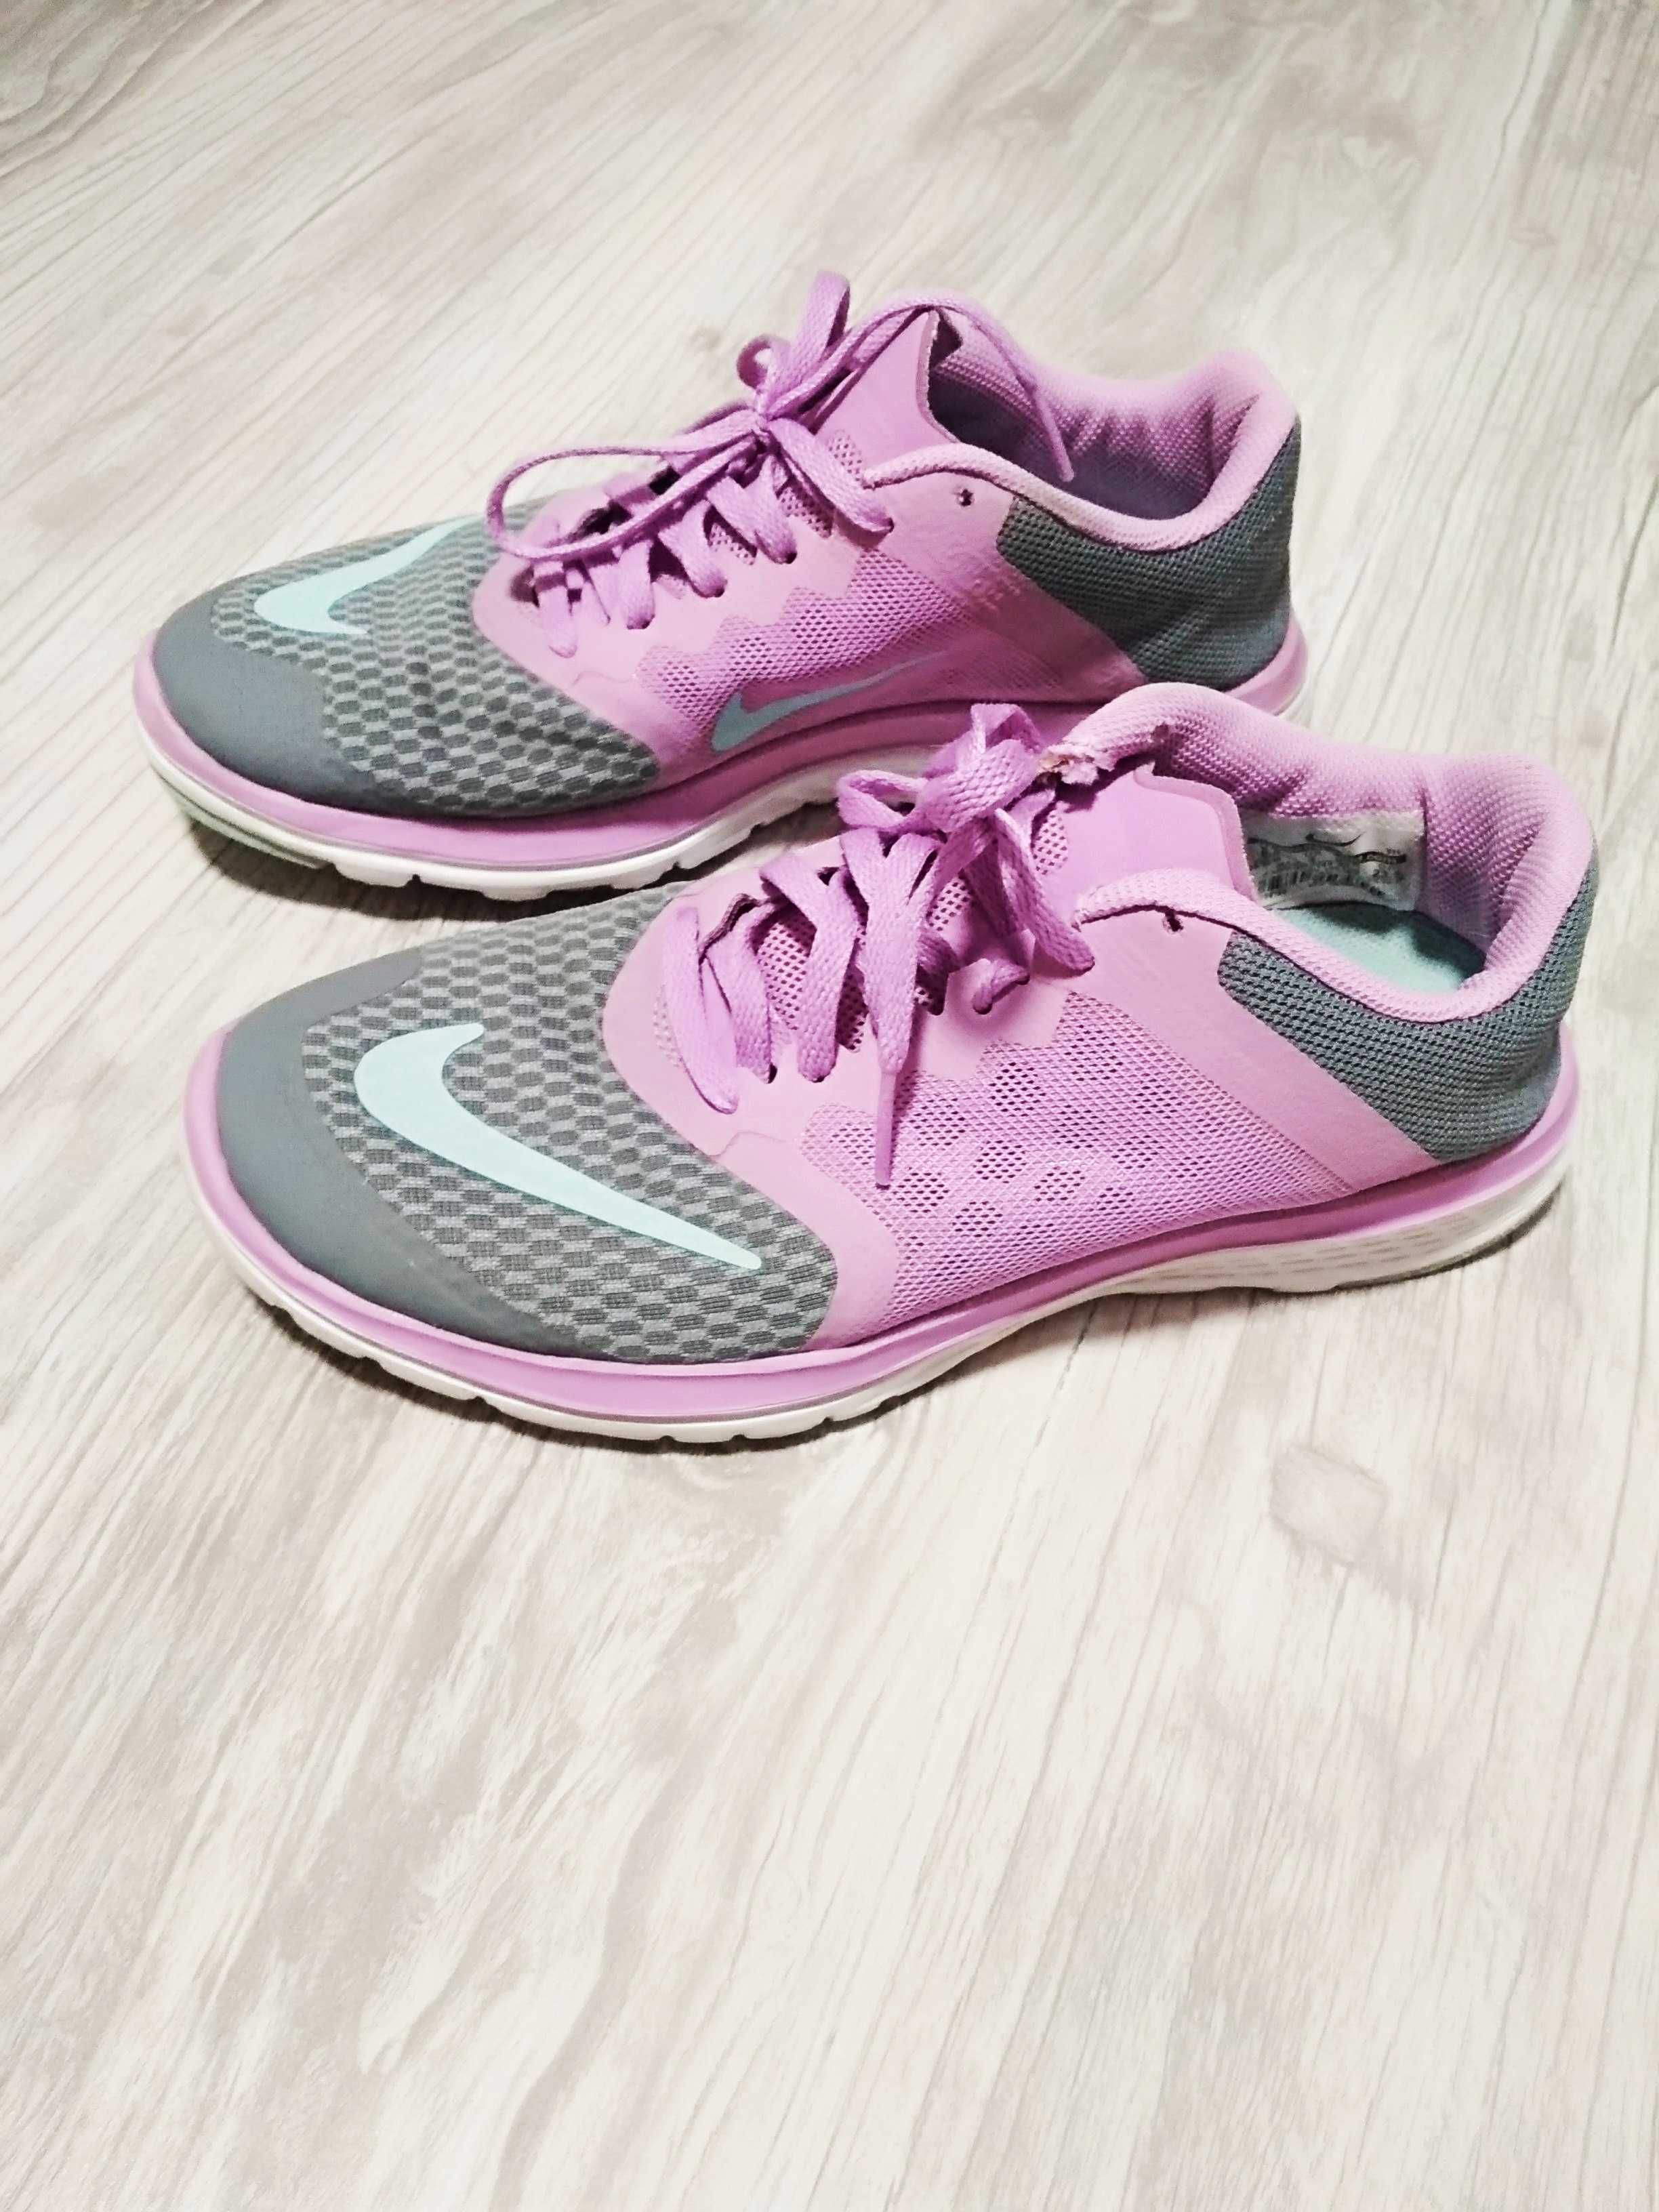 Продам женские кроссовки Nike  (оригинал) размер 37